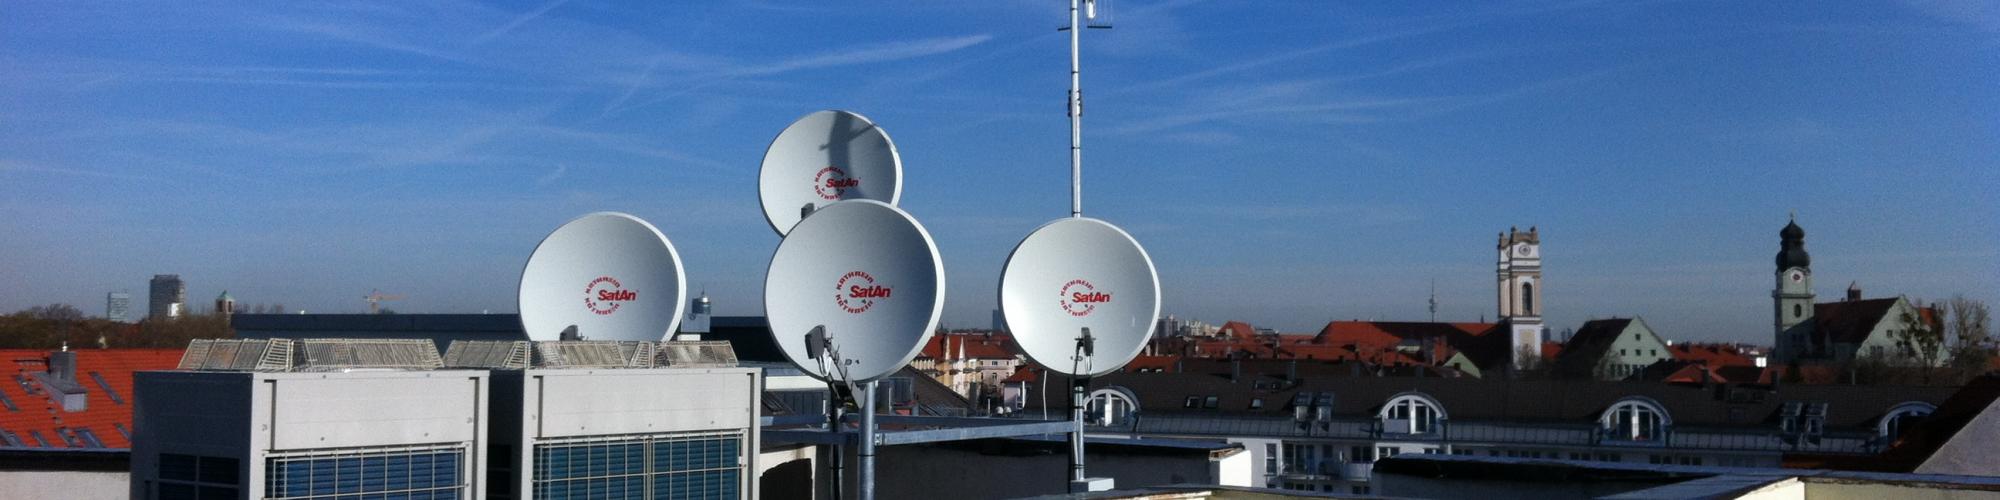 Neumeier, Hegmann & Co. Fernsehdienst Antennenbau GmbH